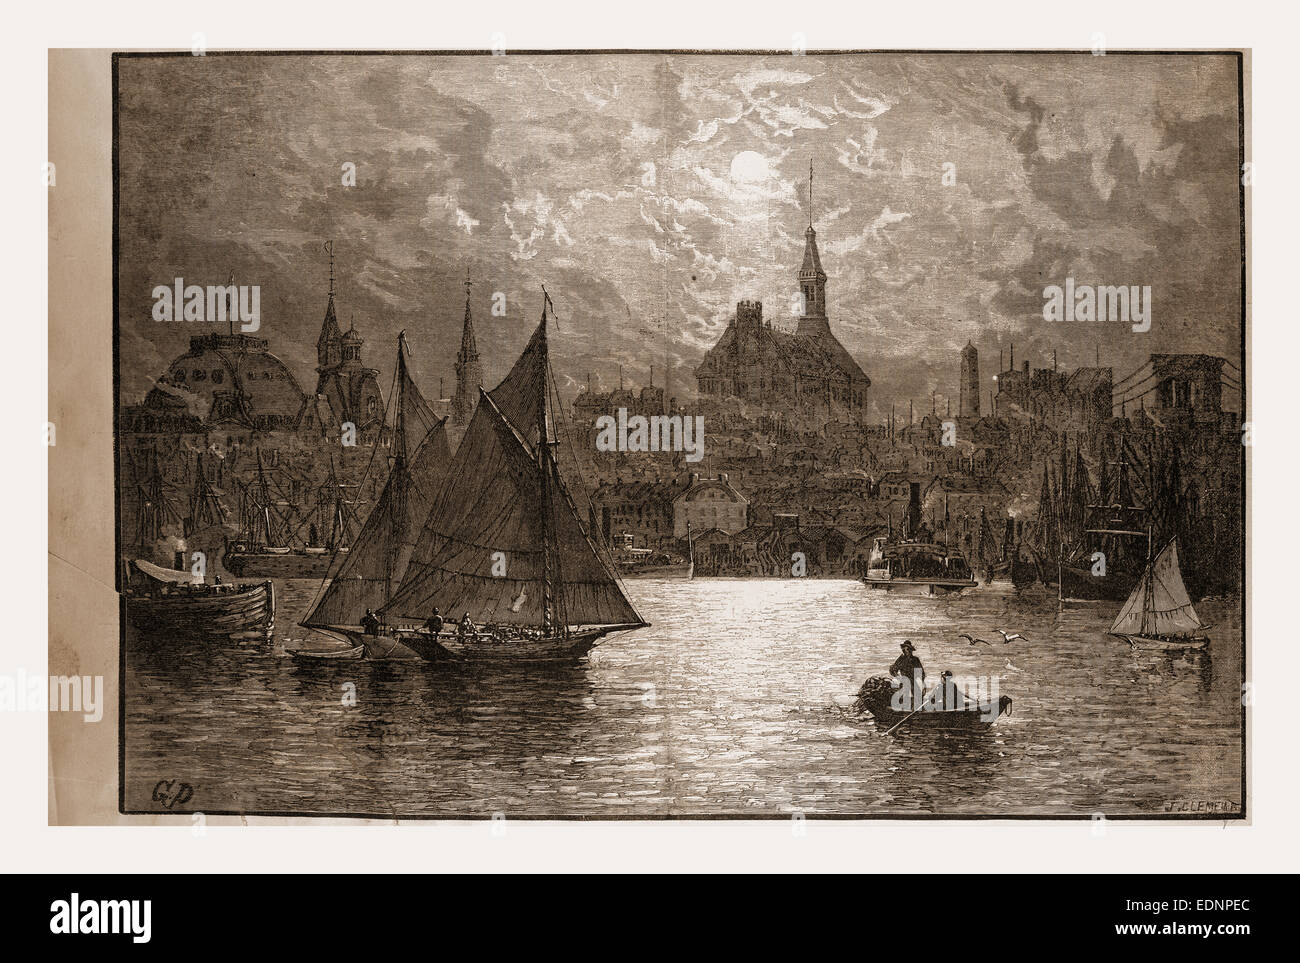 Granville perkins fotografías e imágenes de alta resolución - Alamy